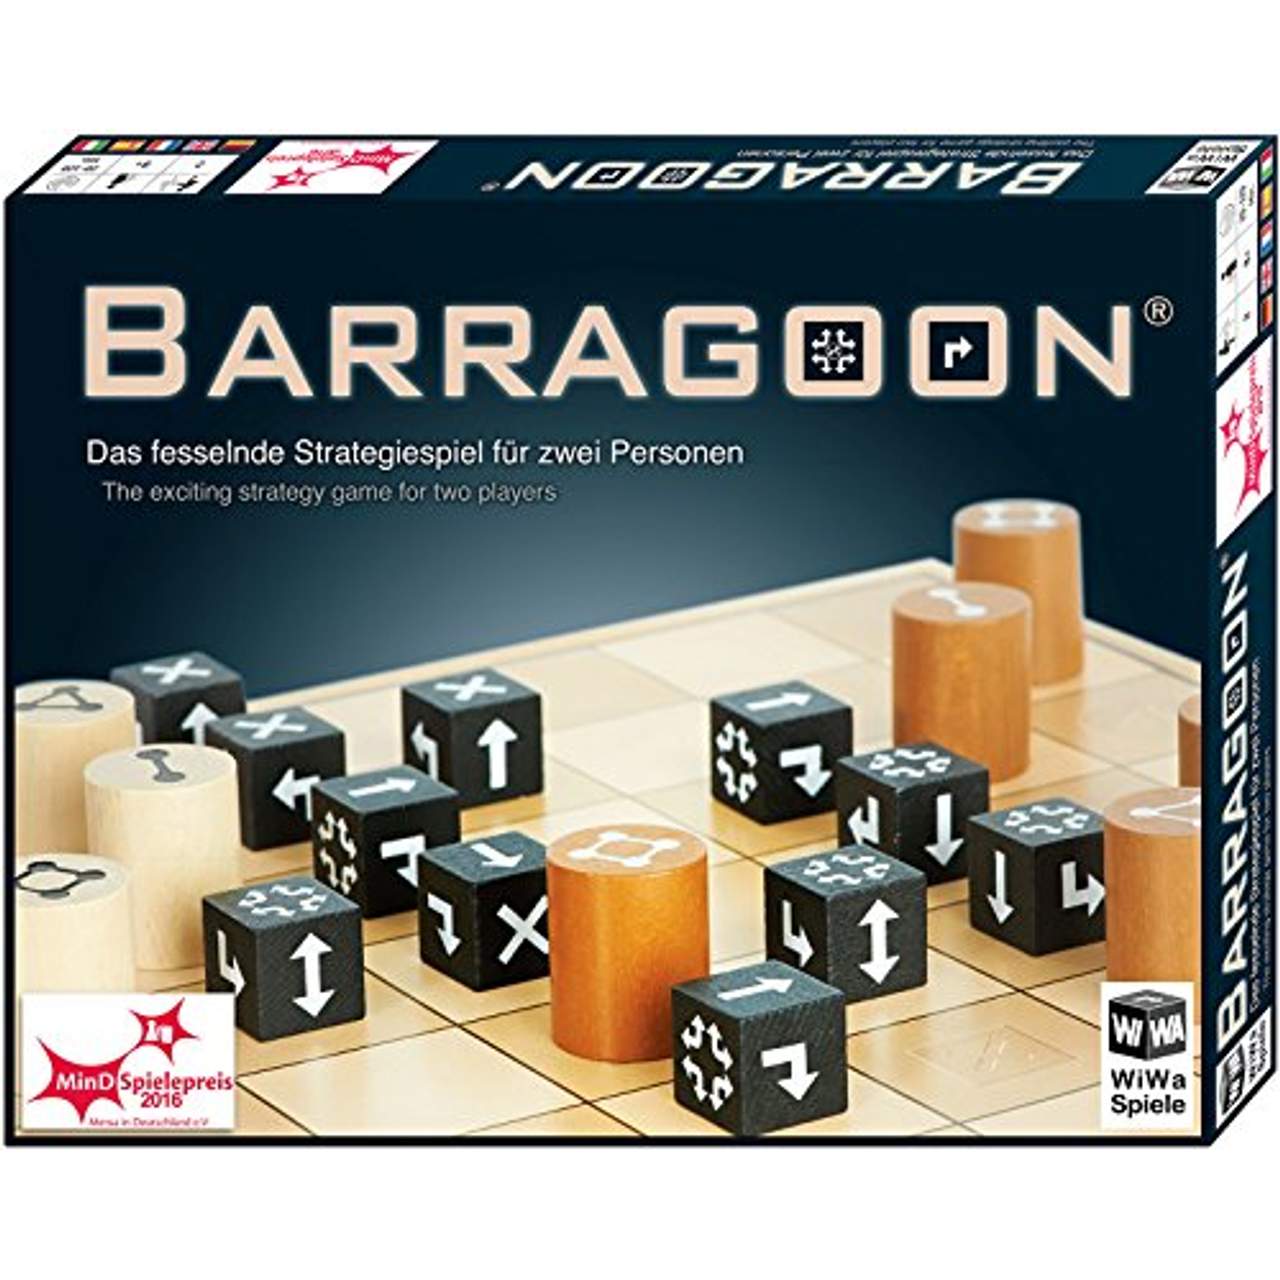 WiWa Spiele 790016 Barragoon Gewinner MinD-Spielepreis 2016